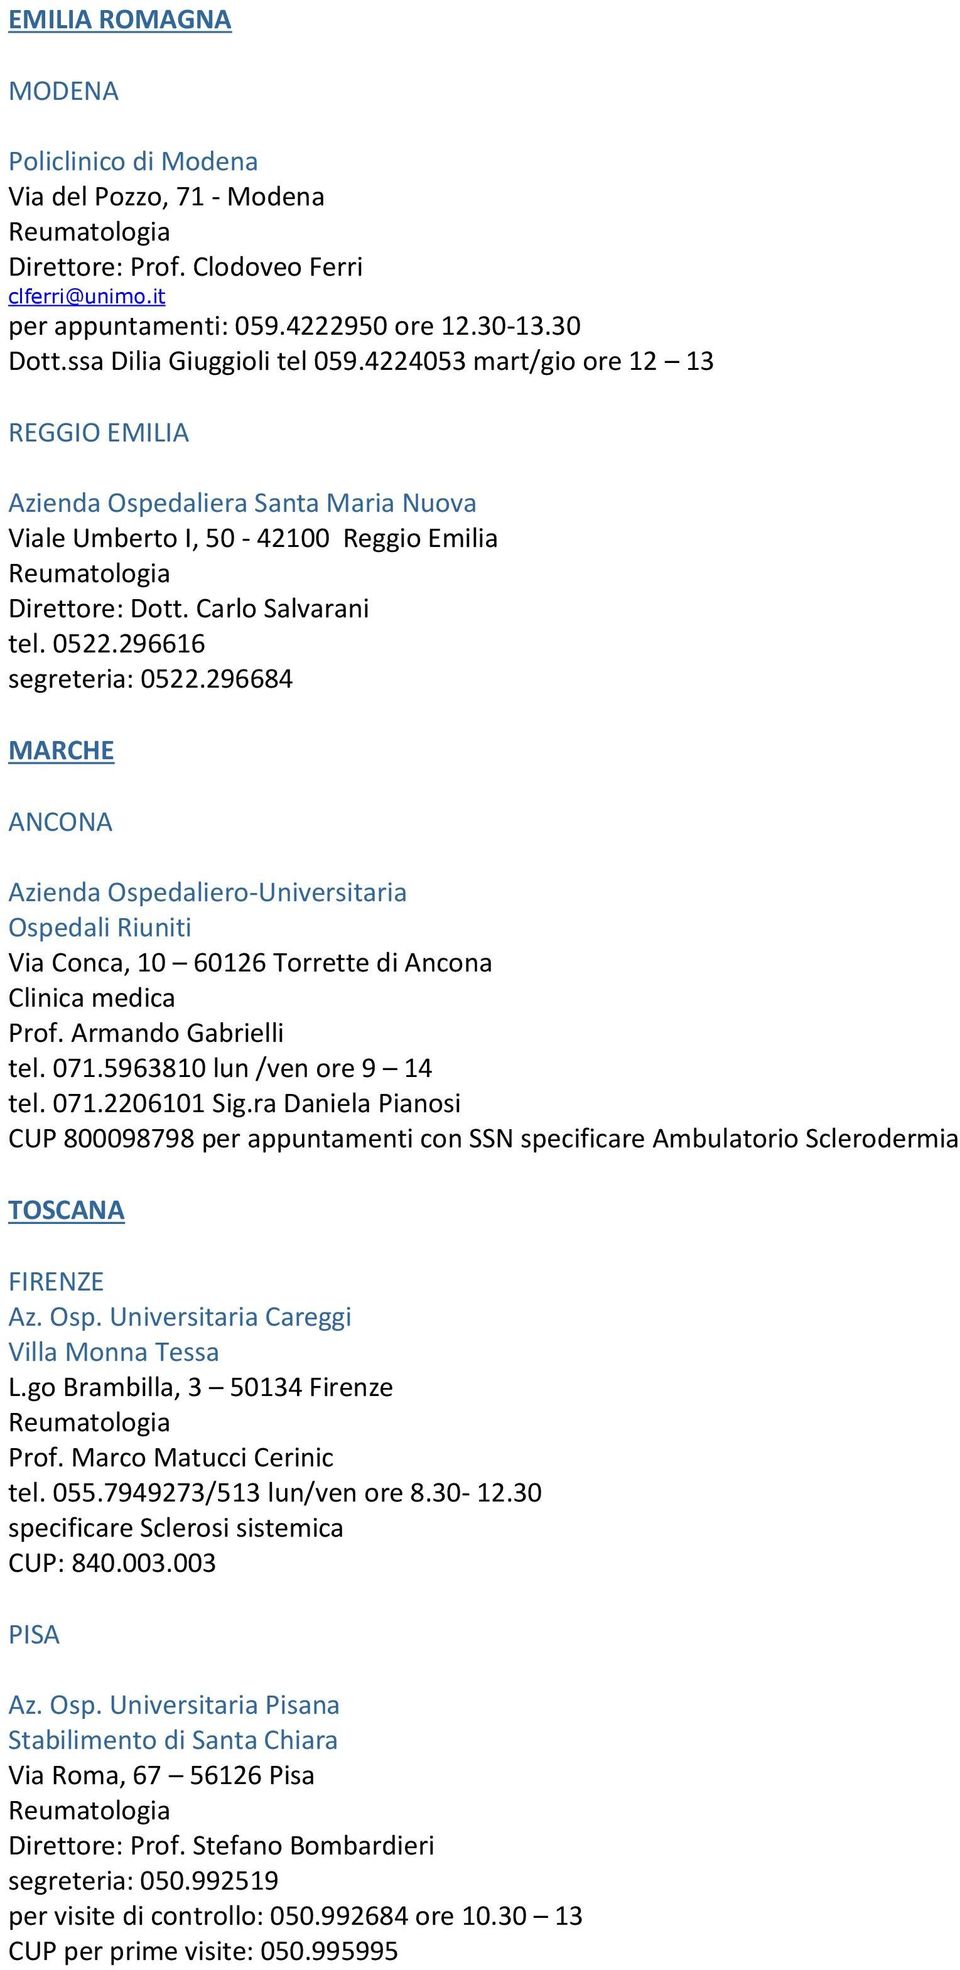 296684 MARCHE ANCONA Azienda Ospedaliero-Universitaria Ospedali Riuniti Via Conca, 10 60126 Torrette di Ancona Clinica medica Prof. Armando Gabrielli tel. 071.5963810 lun /ven ore 9 14 tel. 071.2206101 Sig.